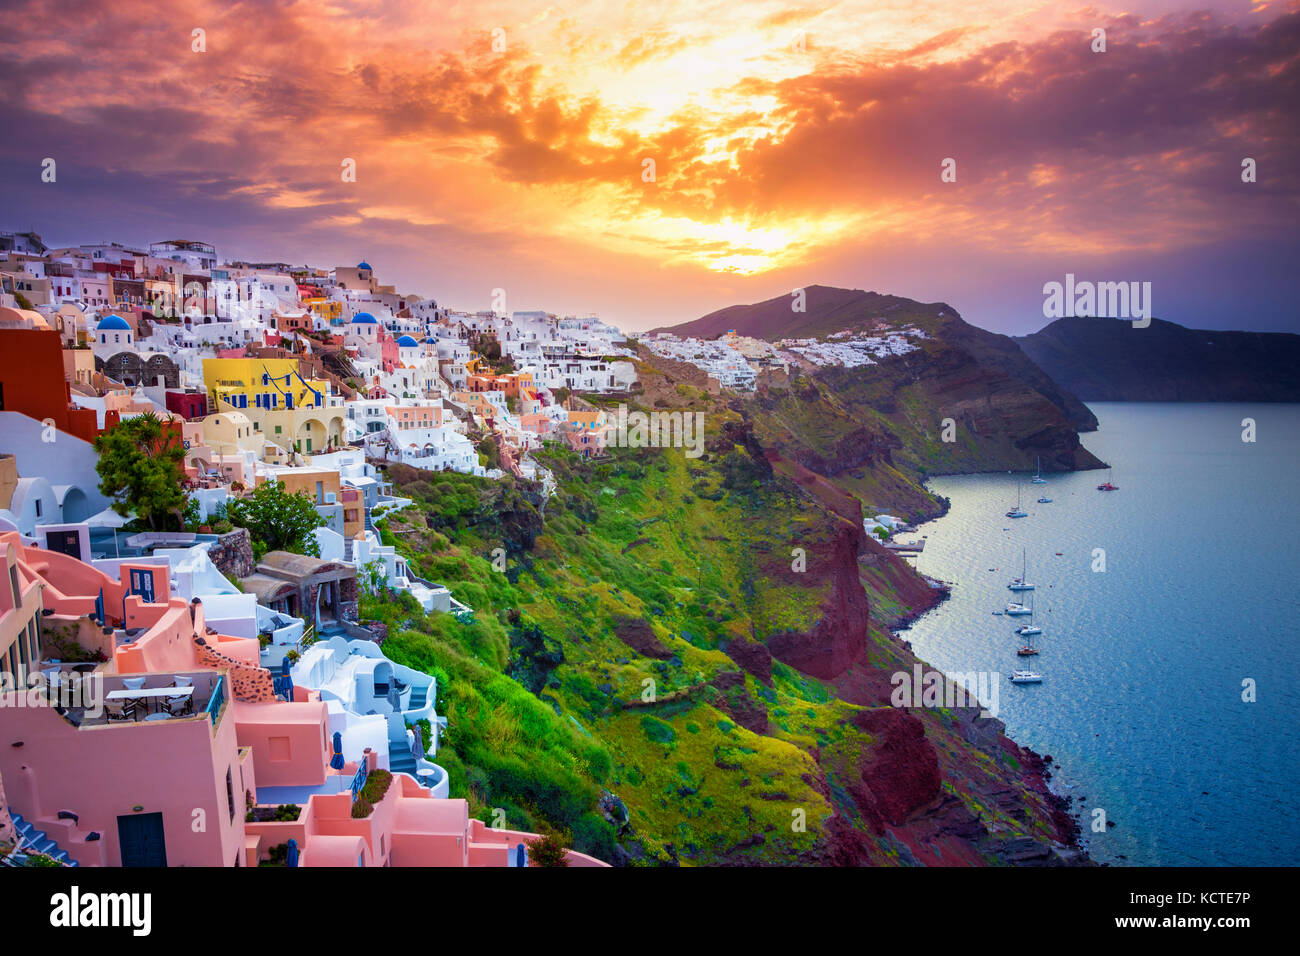 La cittadina di Oia sull isola di Santorini, Grecia. tradizionali e famose case e chiese con le cupole blu sulla caldera, il Mare Egeo Foto Stock